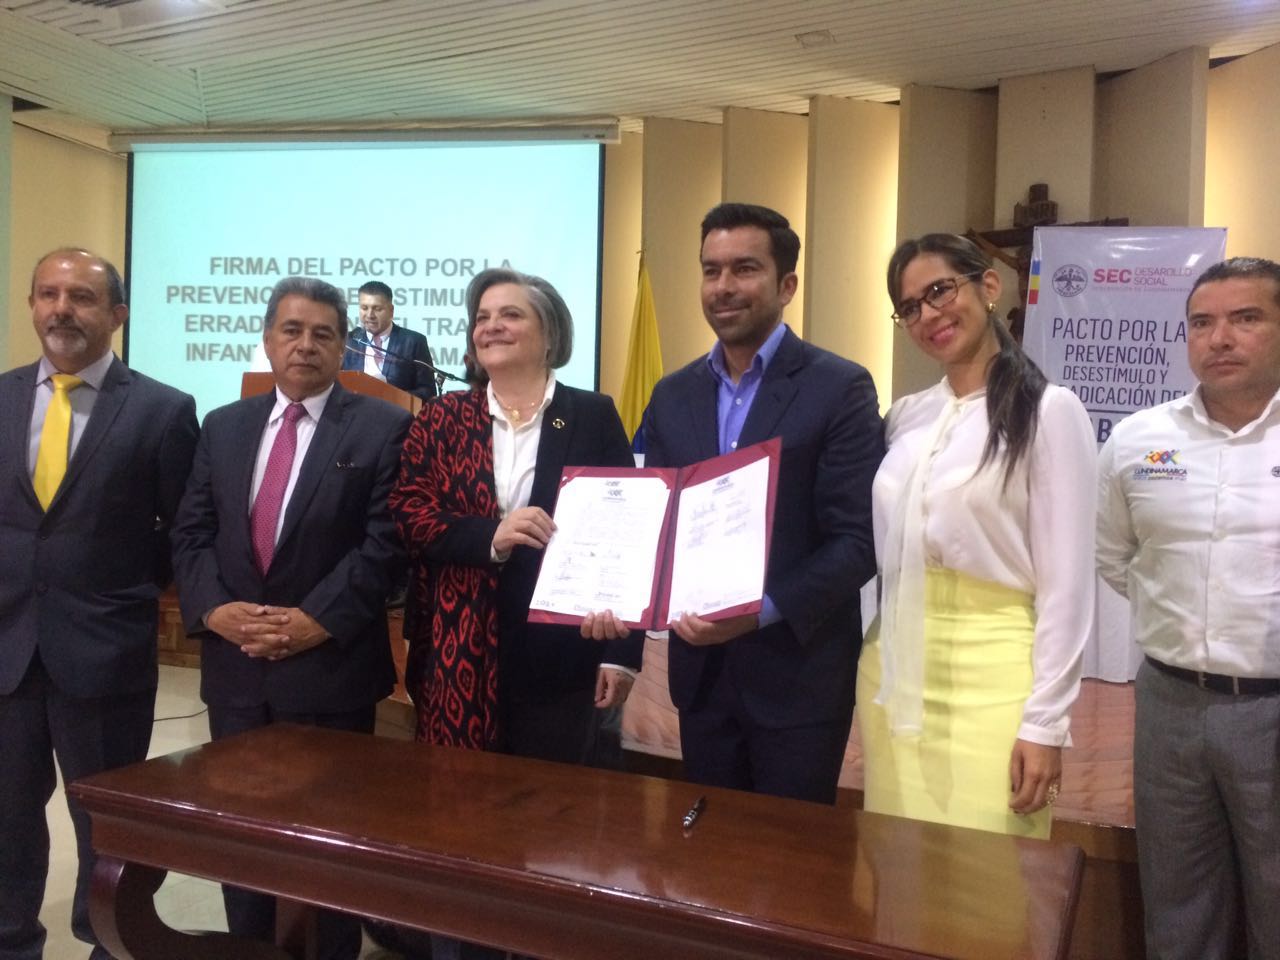 Ministra Clara López y Gobernador de Cundinamarca, Jorge Rey, unidos en la prevención y erradicación del trabajo infantil